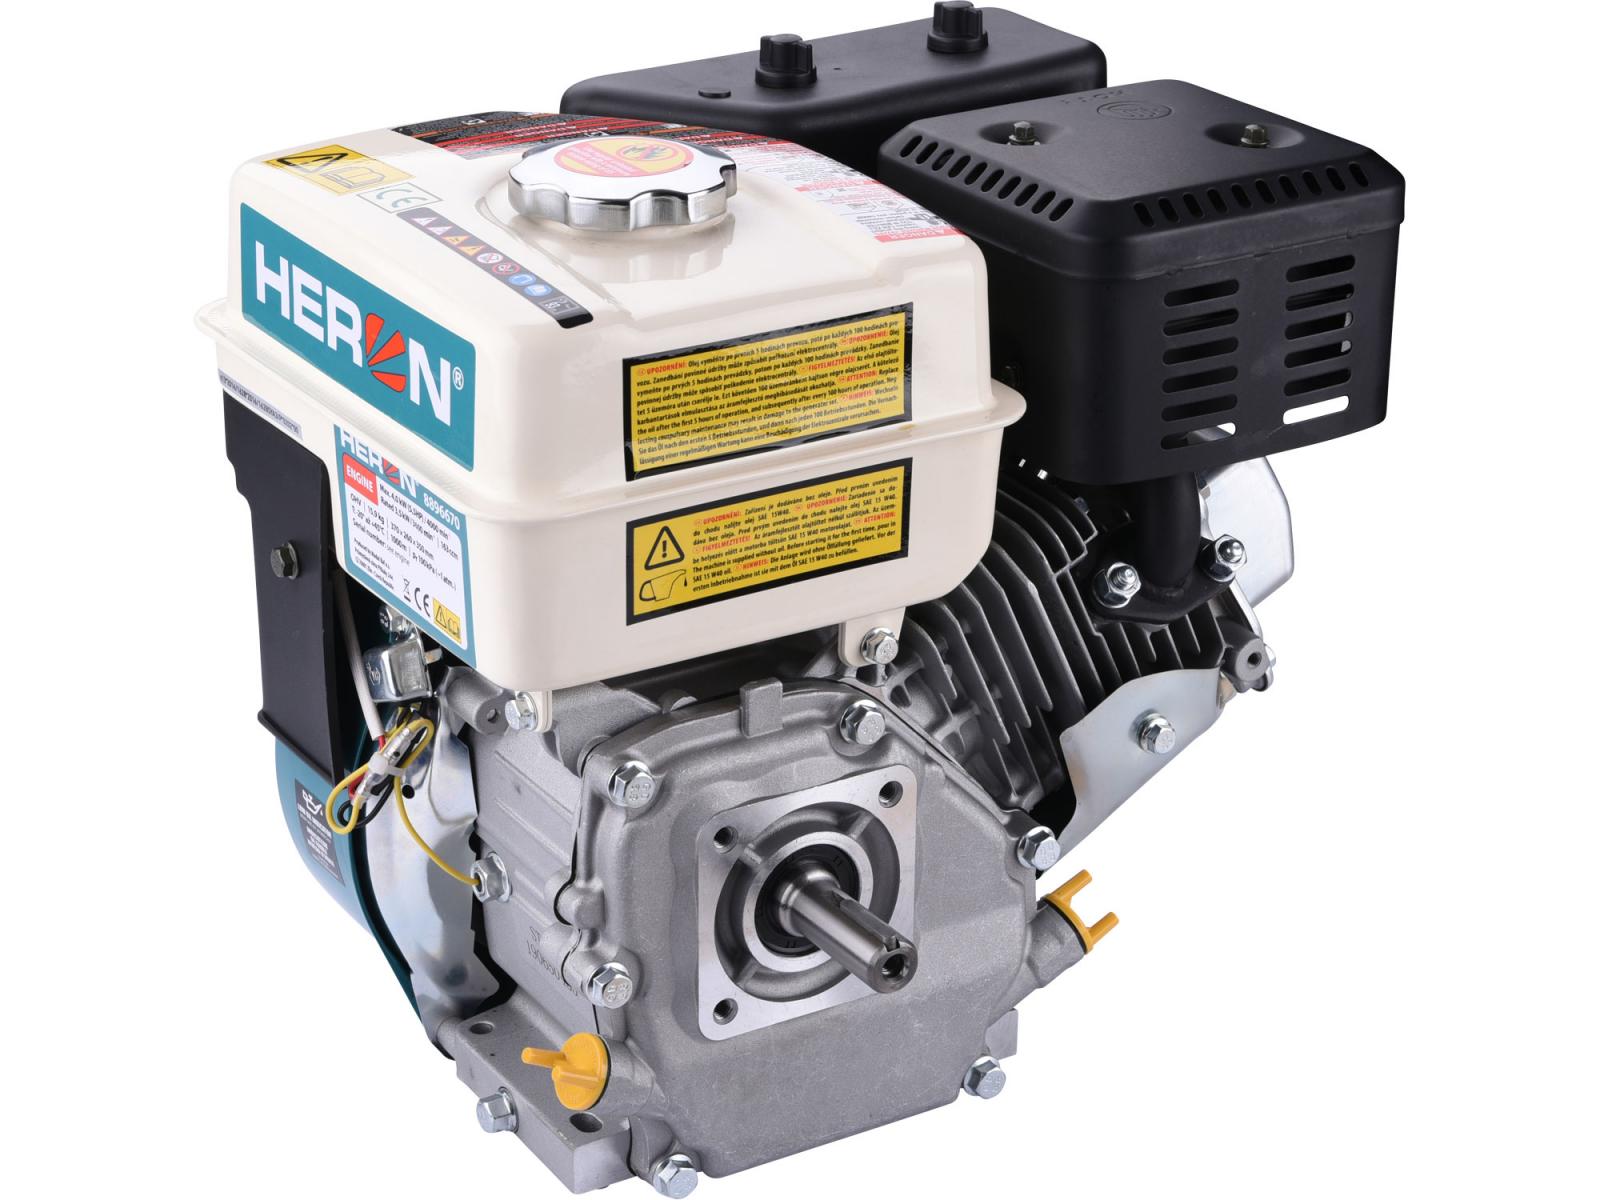 HERON Motor benzínový Spaľovací 8896670